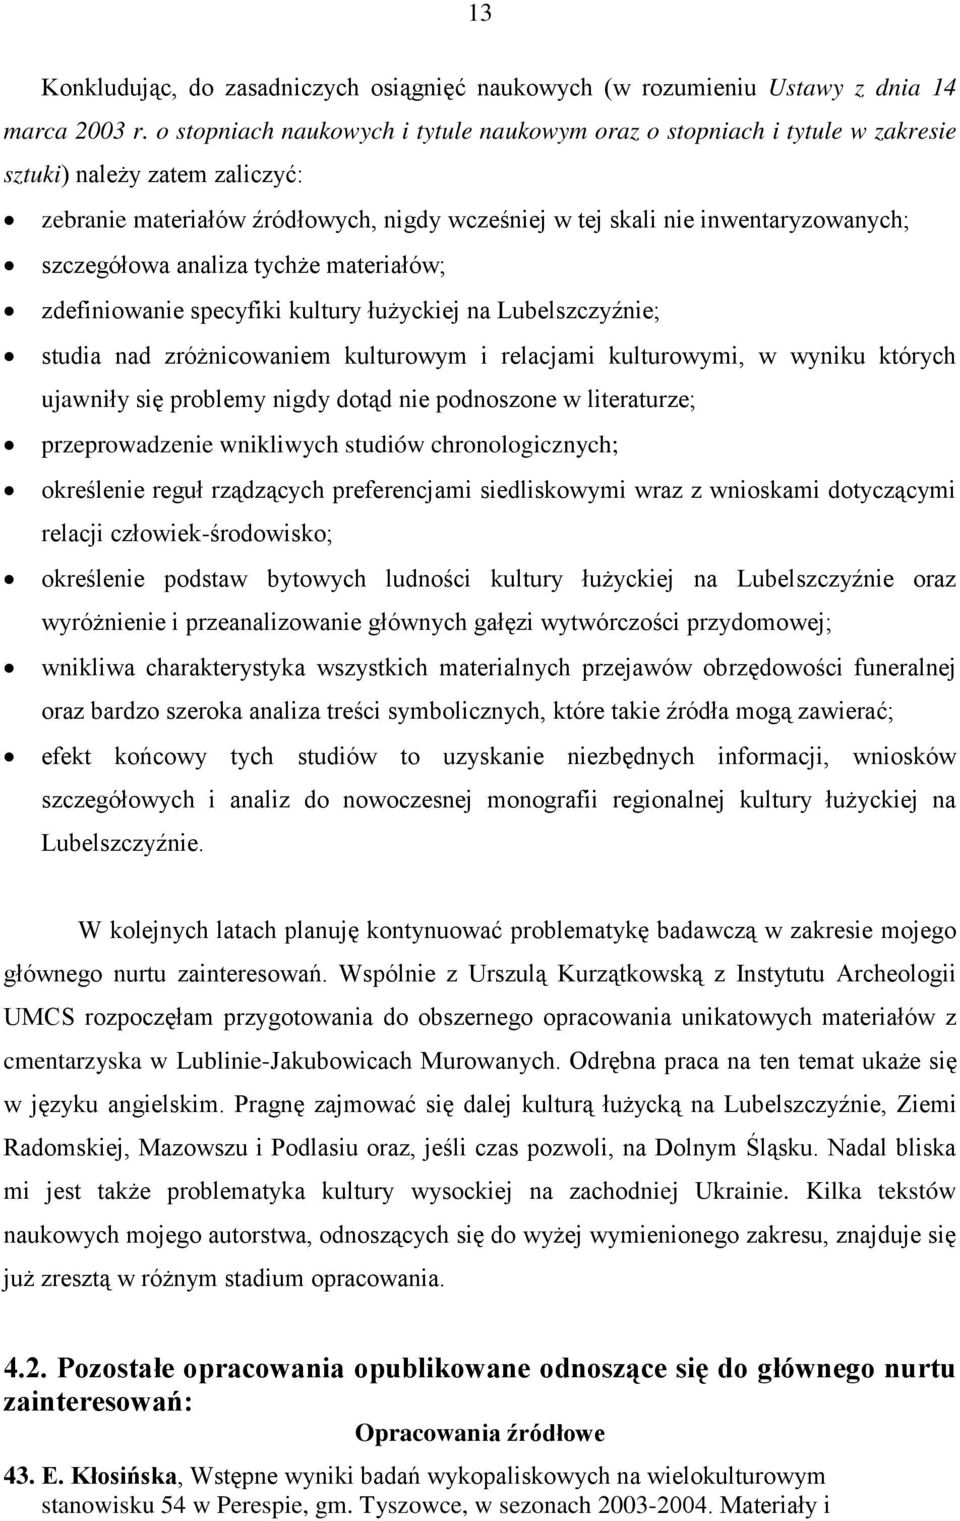 szczegółowa analiza tychże materiałów; zdefiniowanie specyfiki kultury łużyckiej na Lubelszczyźnie; studia nad zróżnicowaniem kulturowym i relacjami kulturowymi, w wyniku których ujawniły się